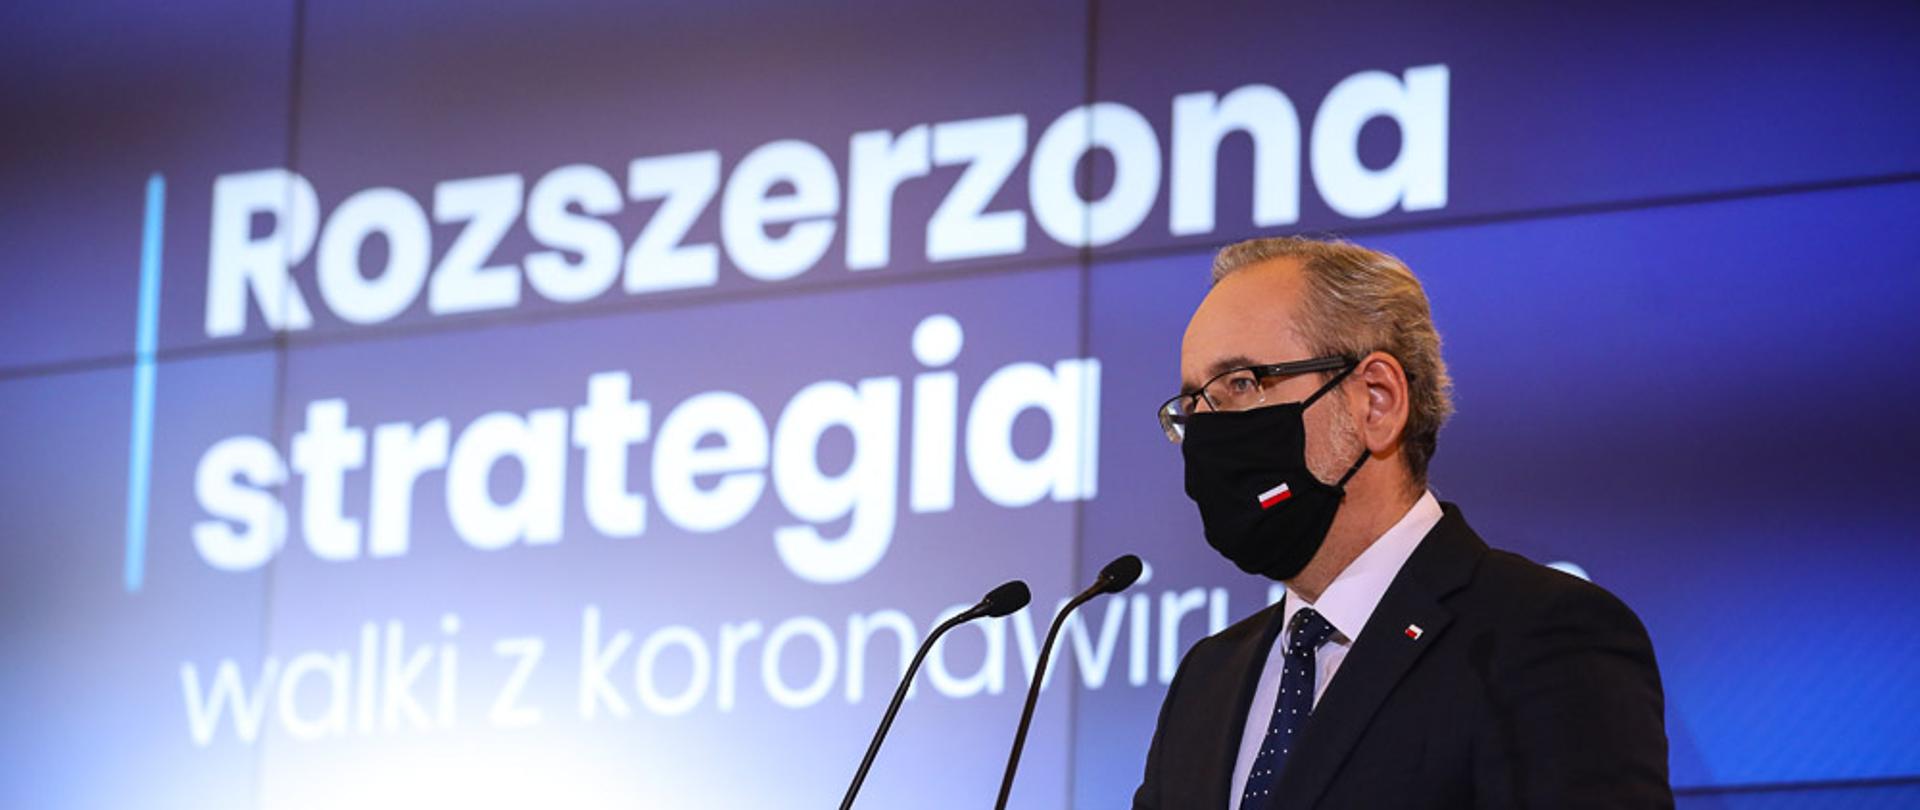 Minister Niedzielski podczas konferencji.